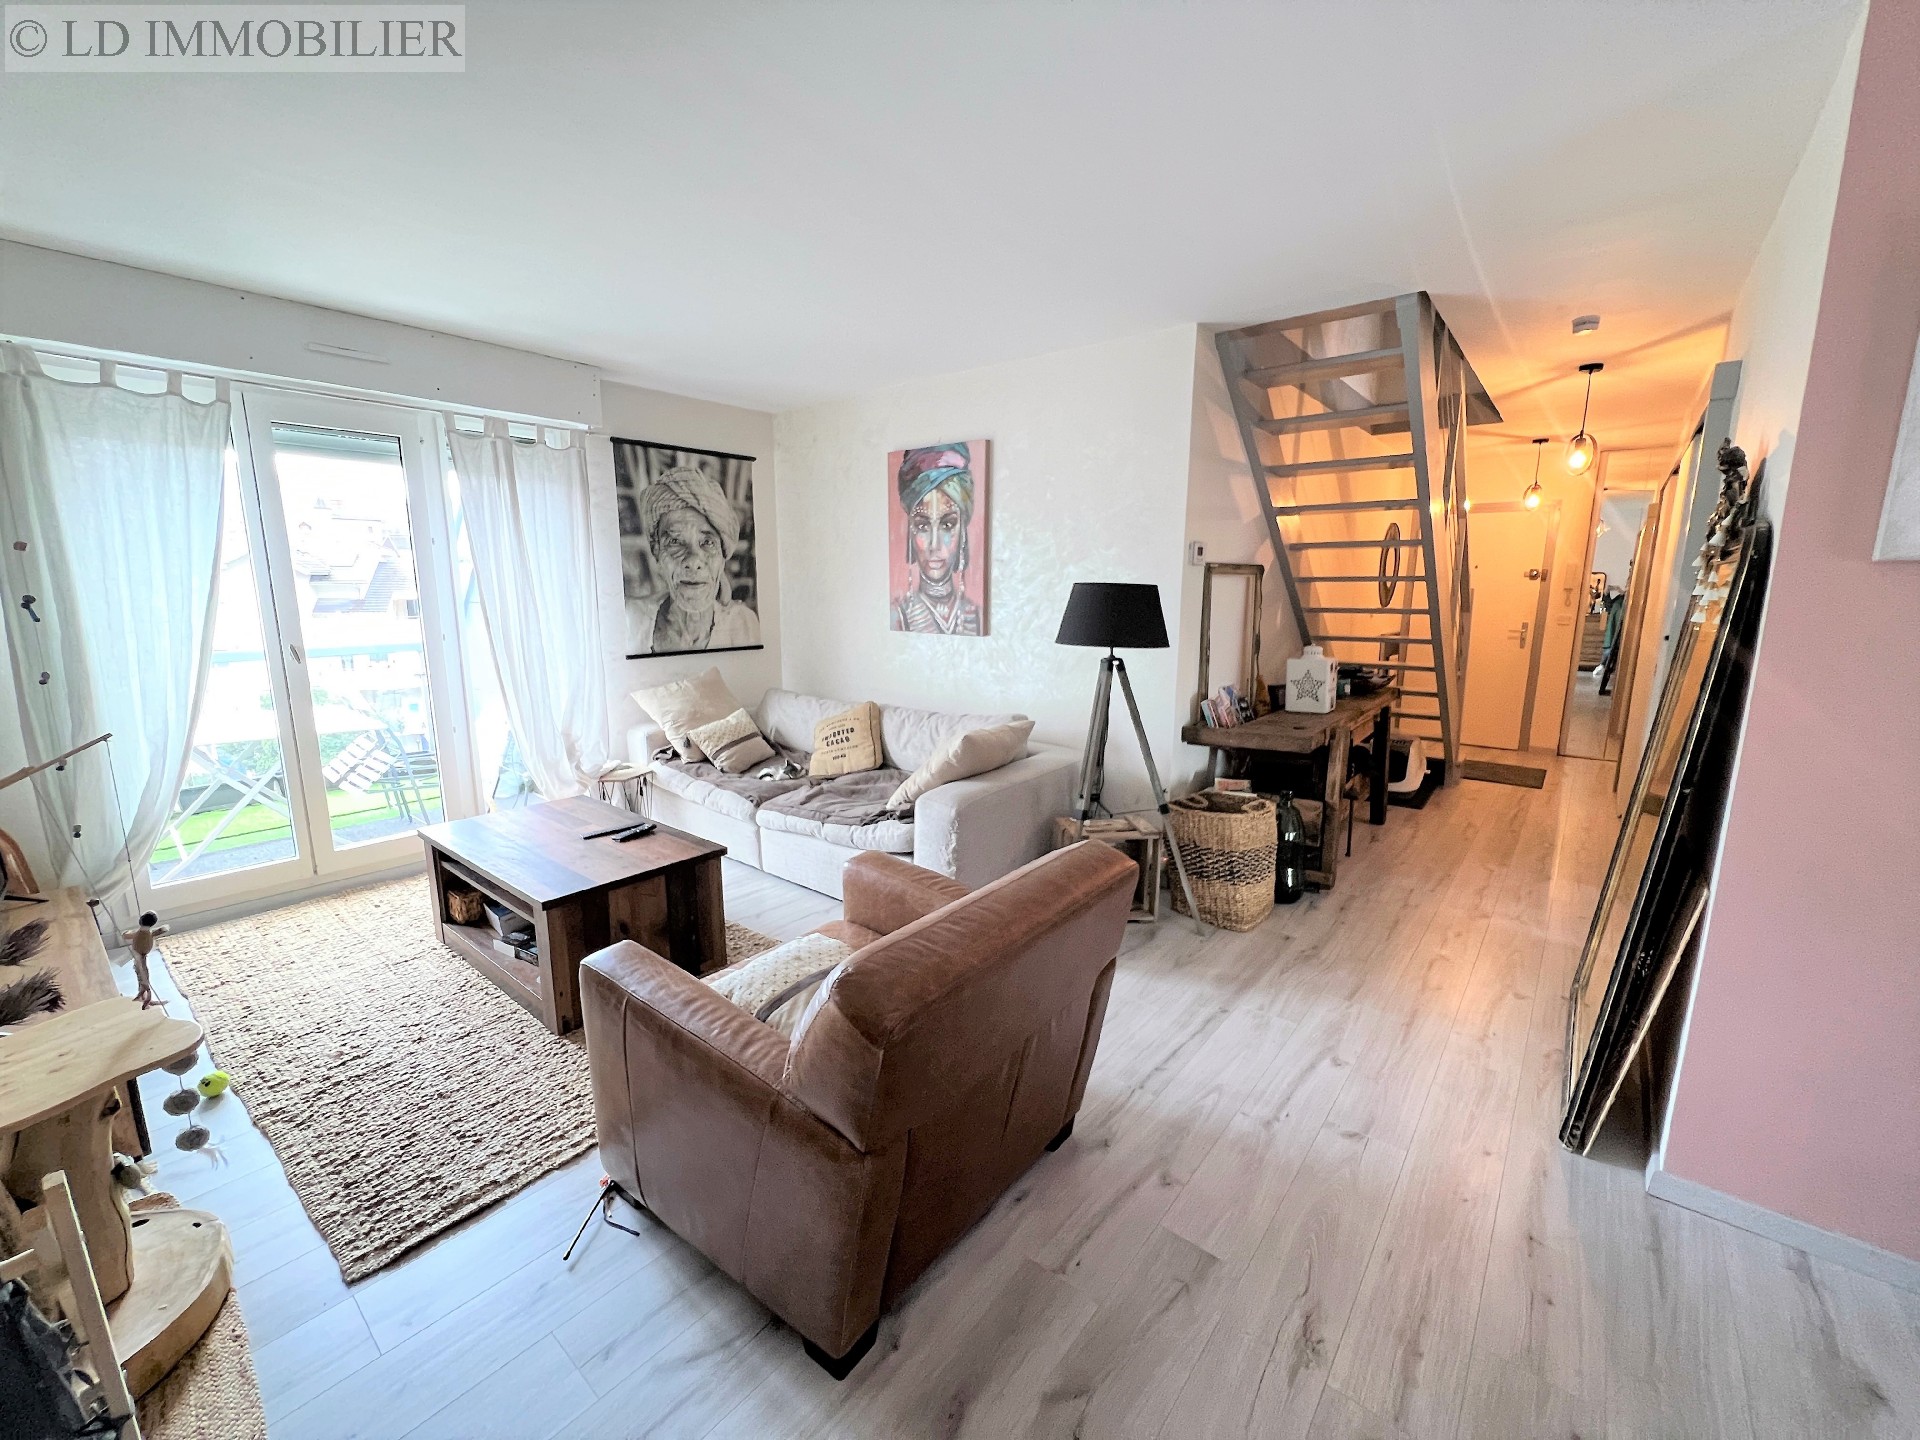 Vente appartement - CHALLES LES EAUX 103 m², 5 pièces